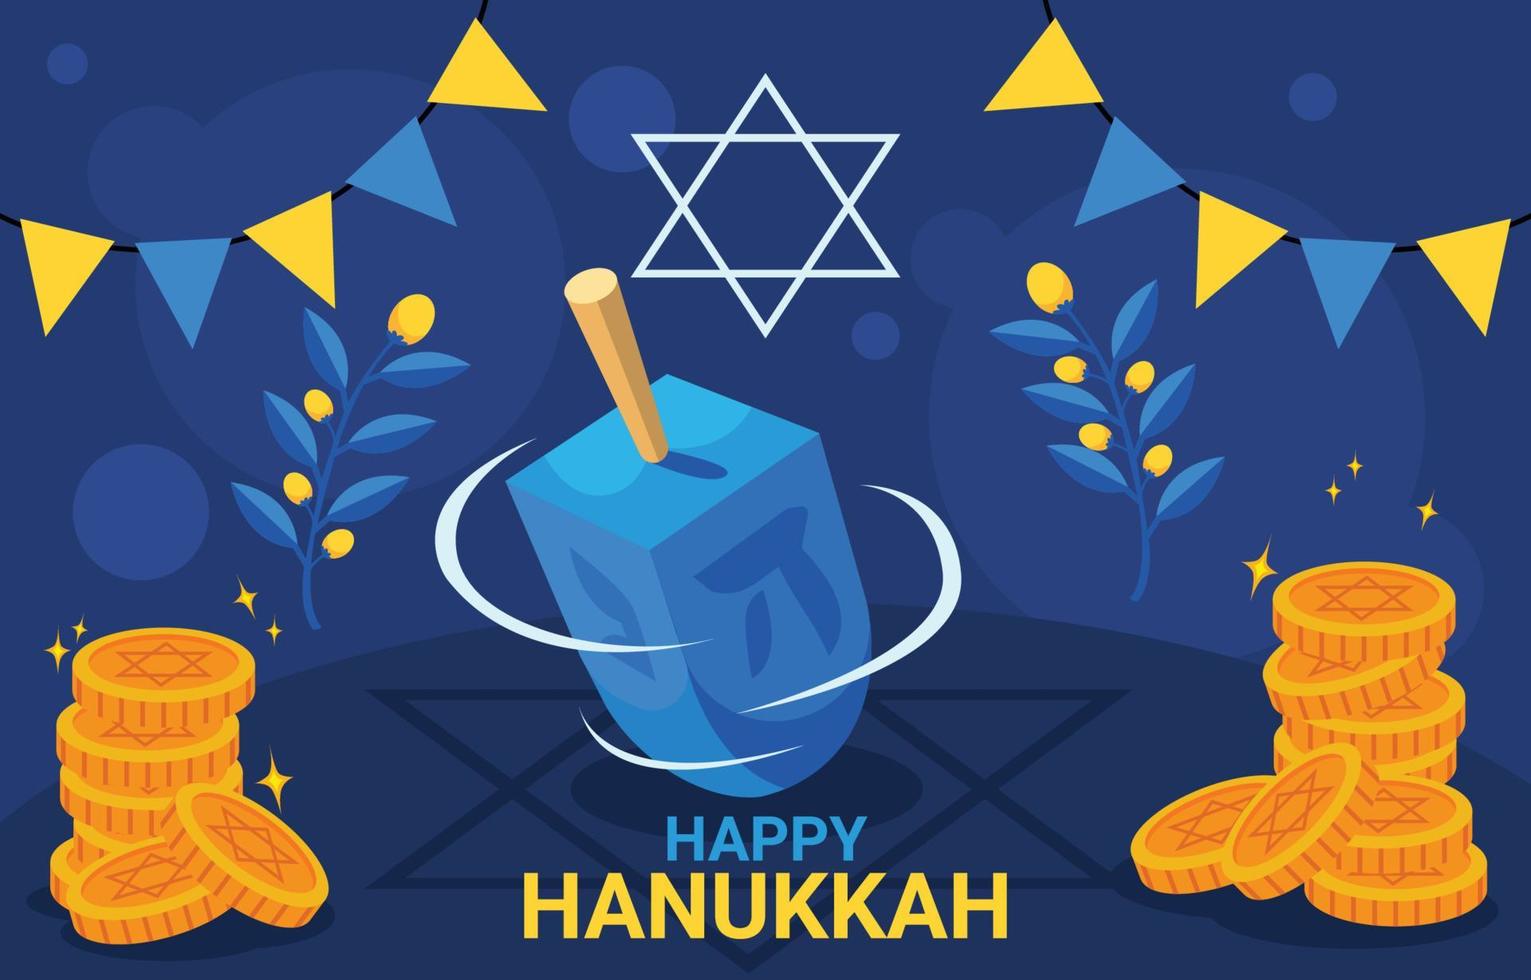 Dreidel For Hanukkah Festival Celebration vector